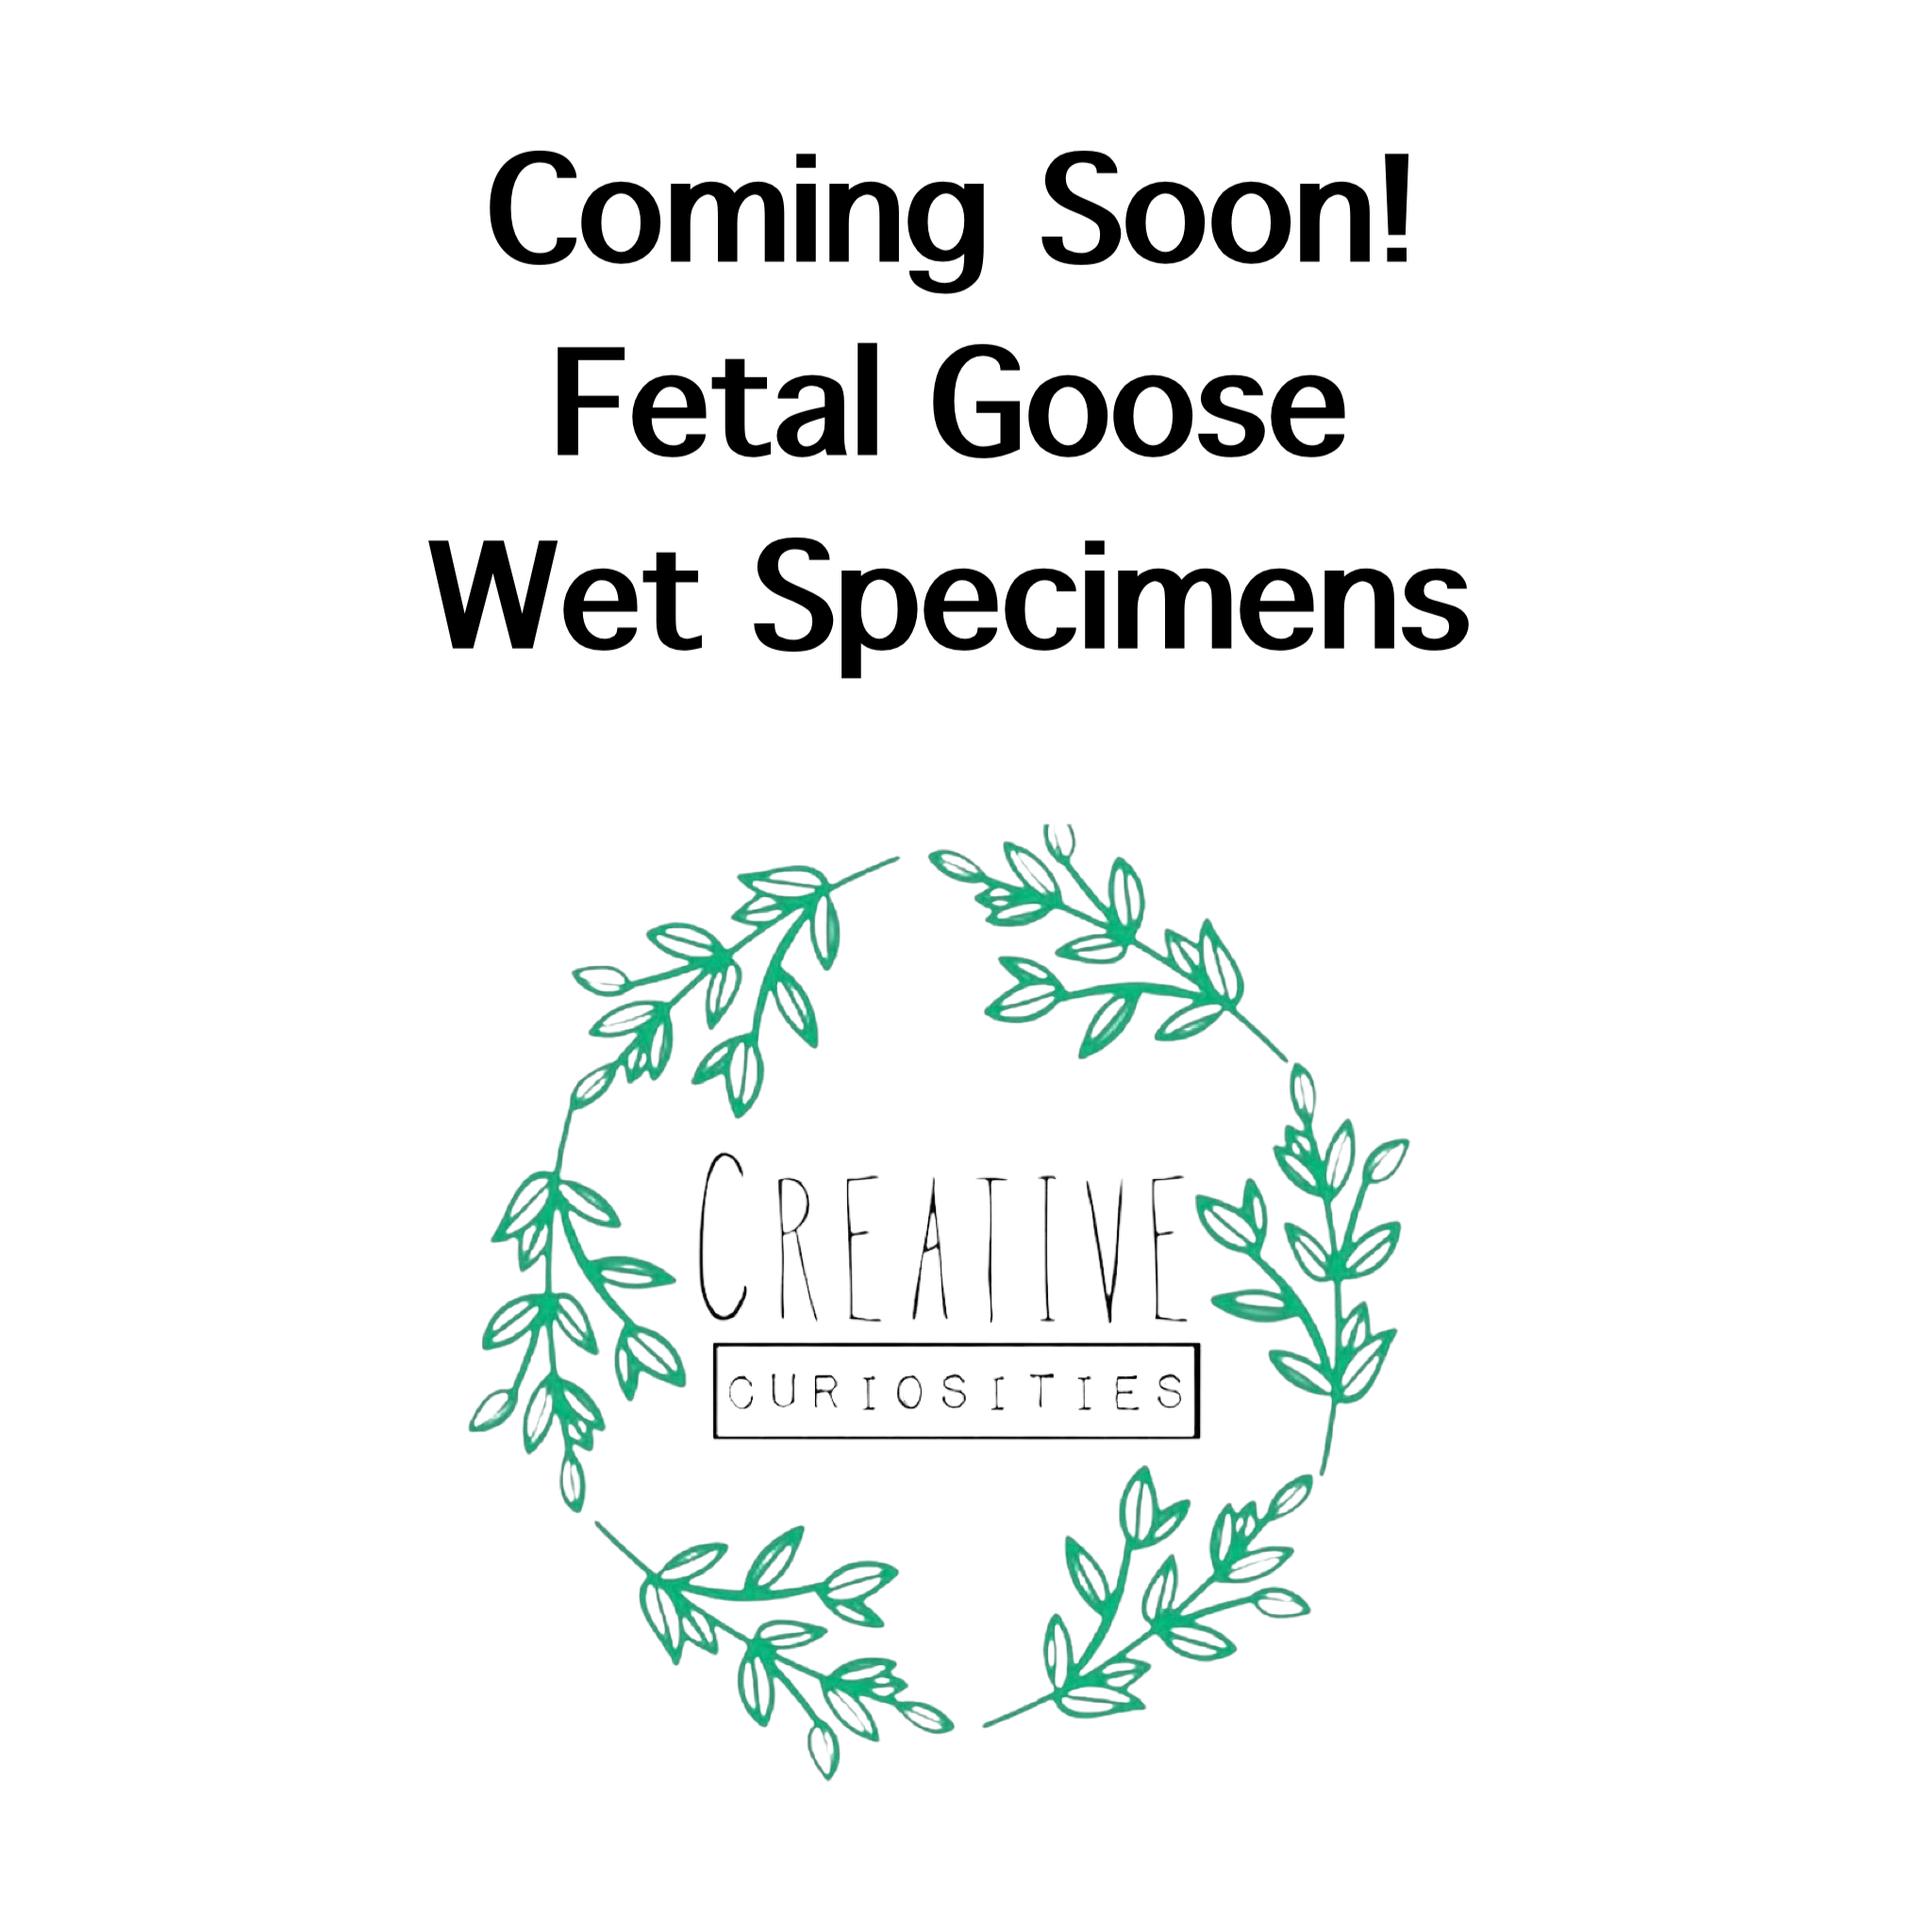 Baby Goose Wet Specimens